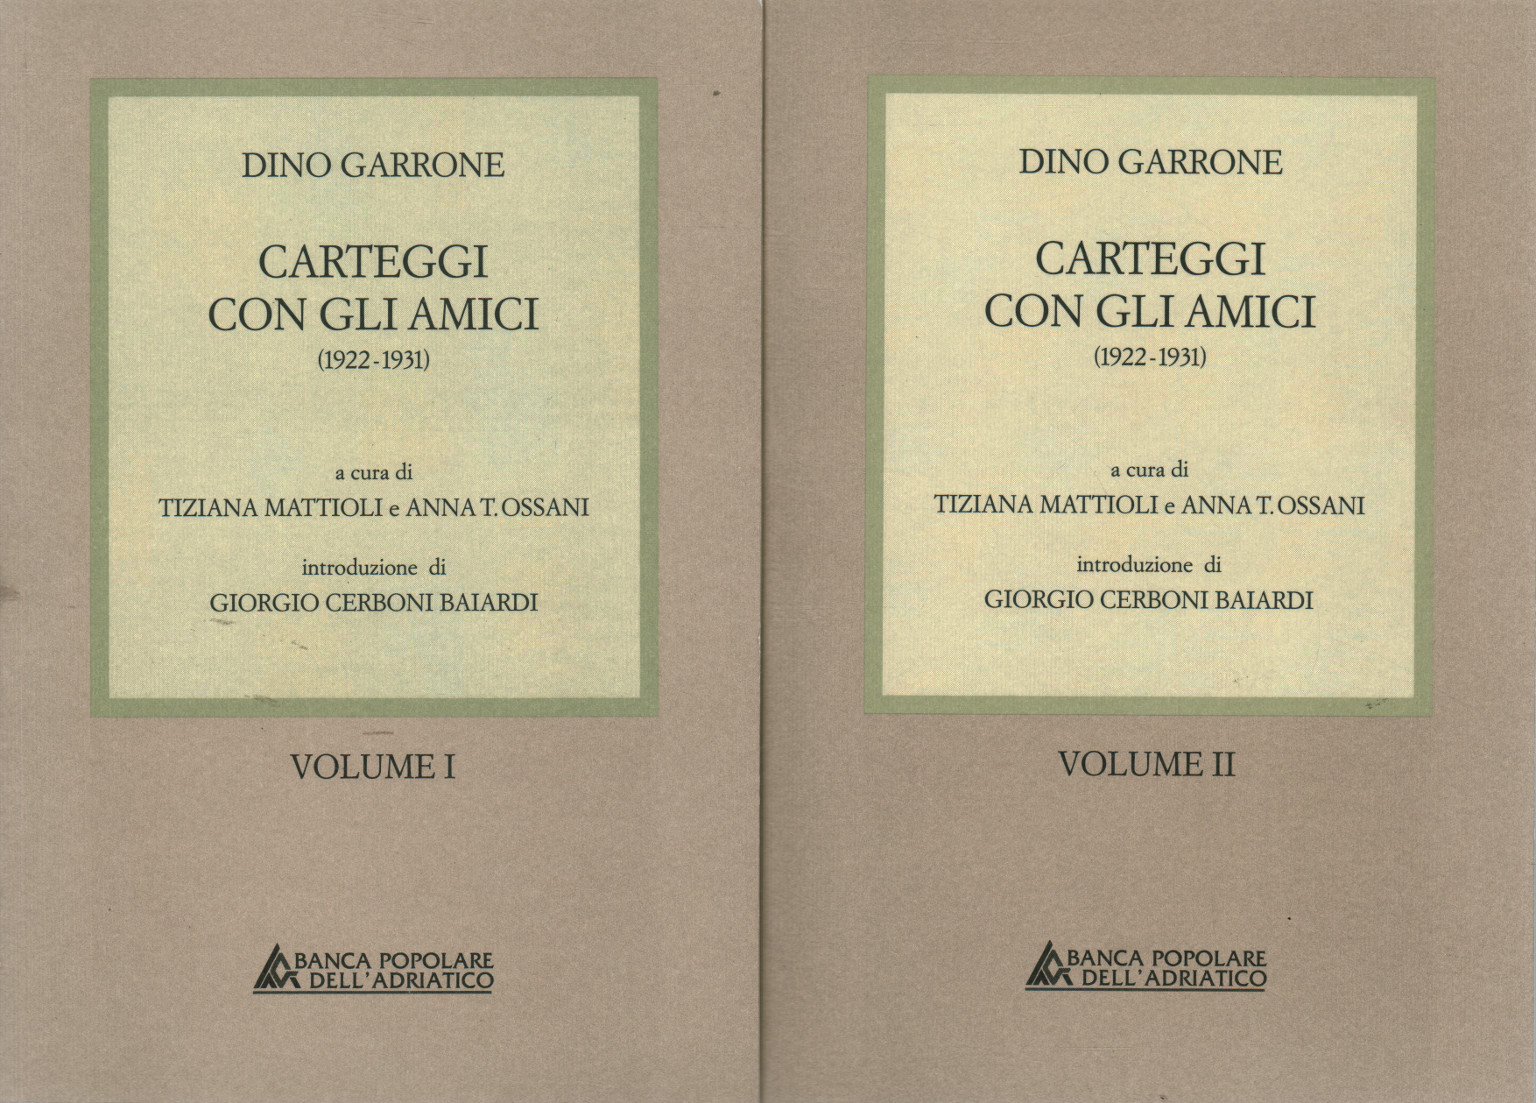 Carteggi con gli amici 1922-1931 (2 volumi), Dino Garrone